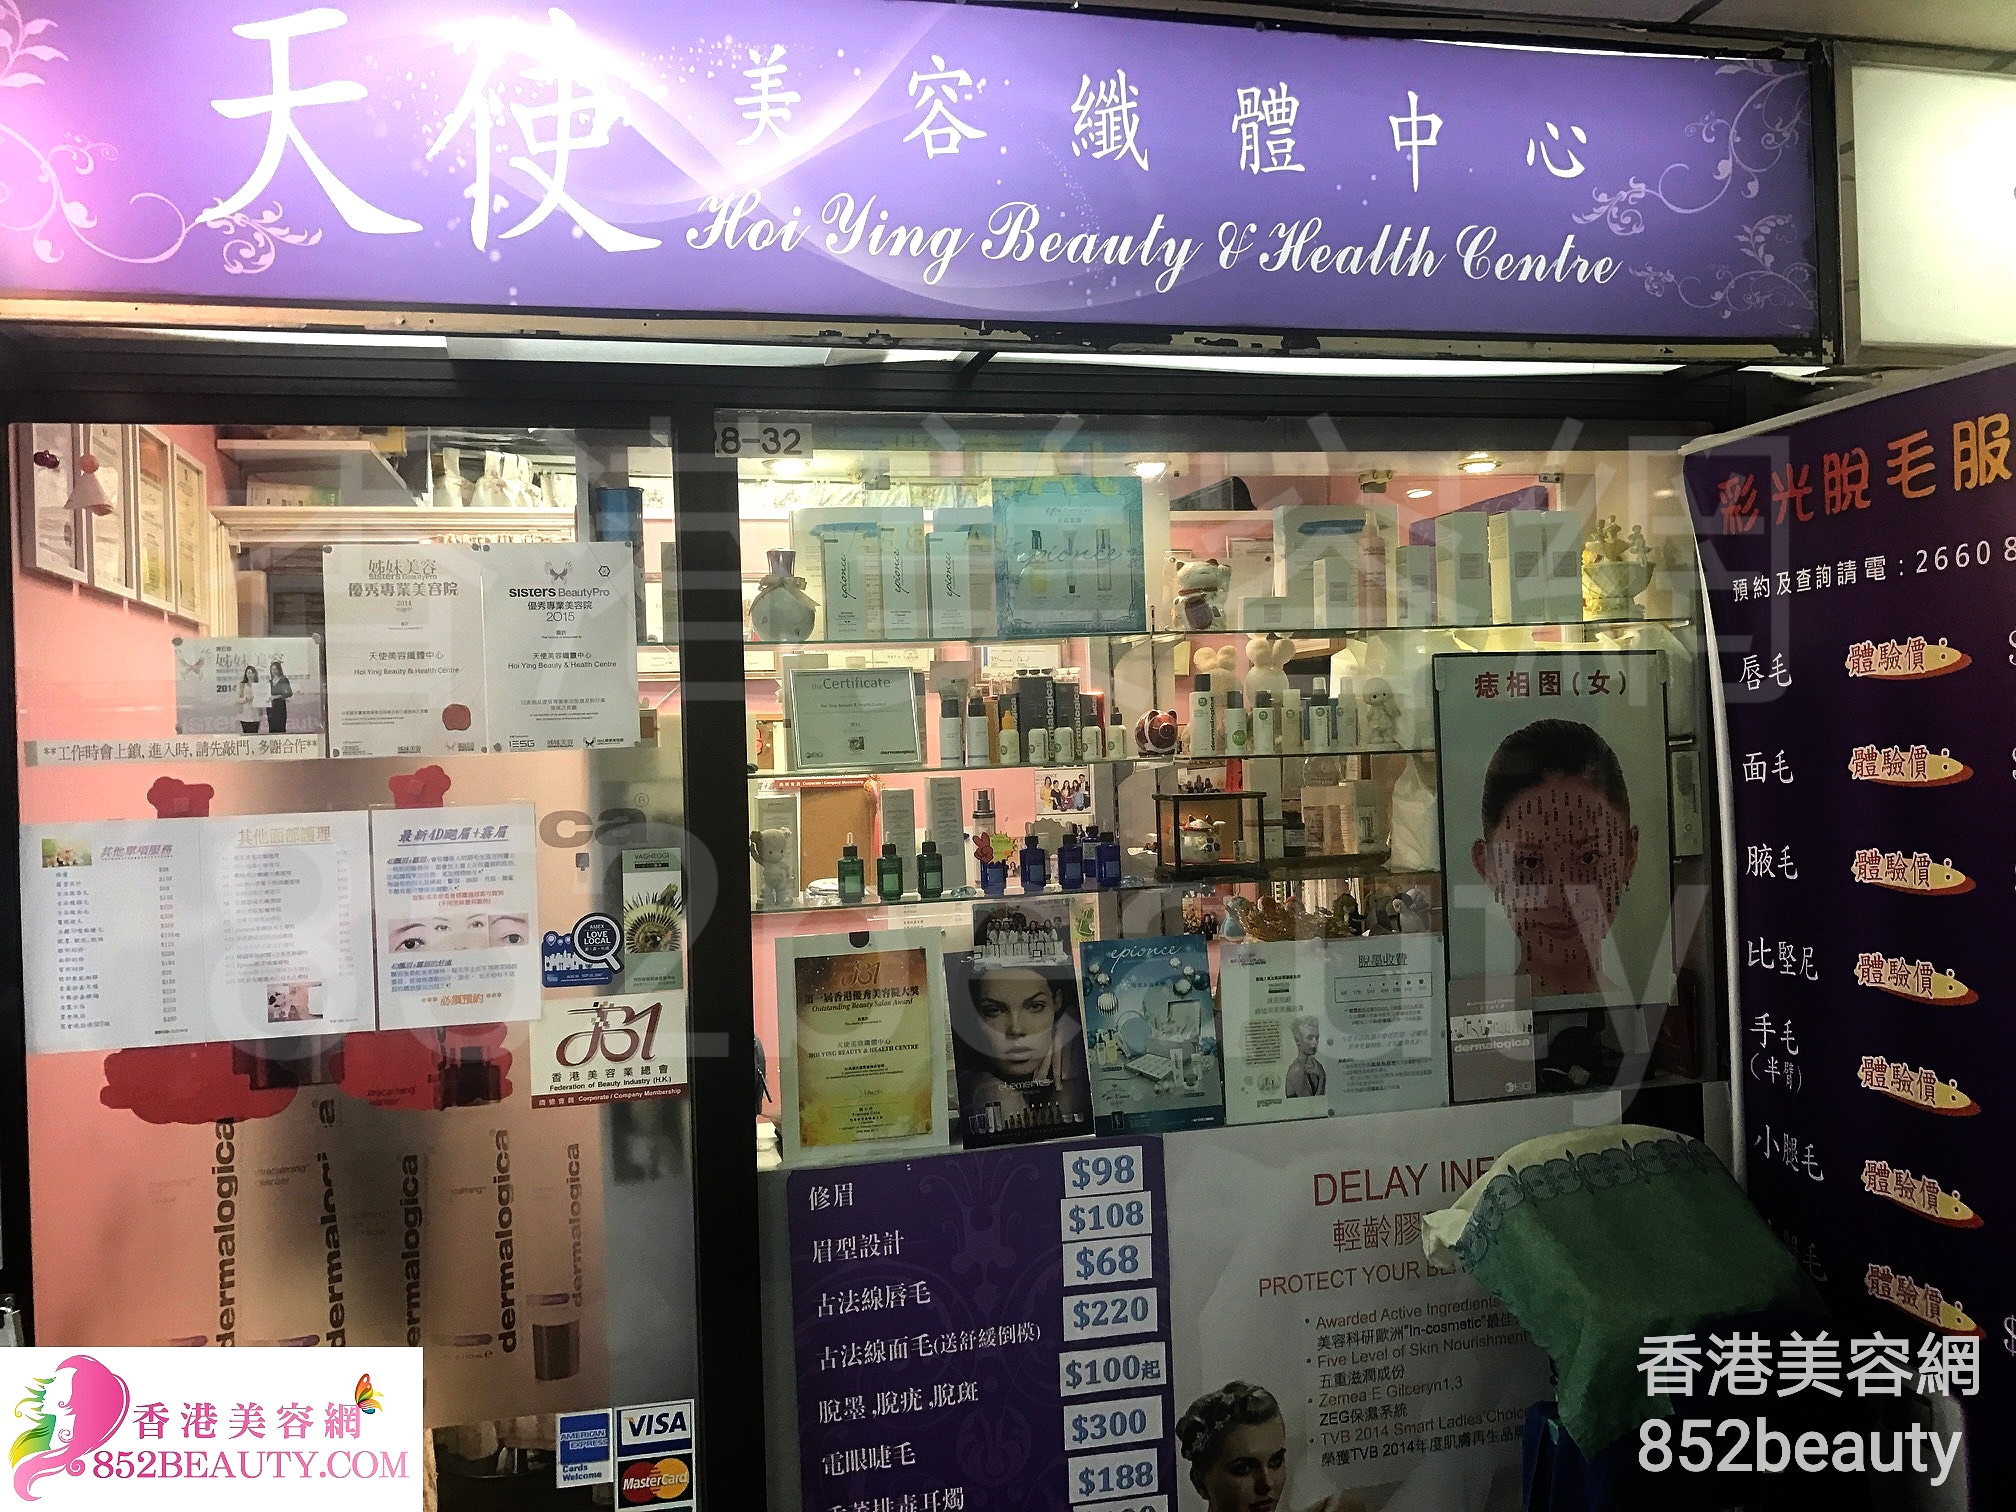 香港美容網 Hong Kong Beauty Salon 美容院 / 美容師: 天使美容纖體中心